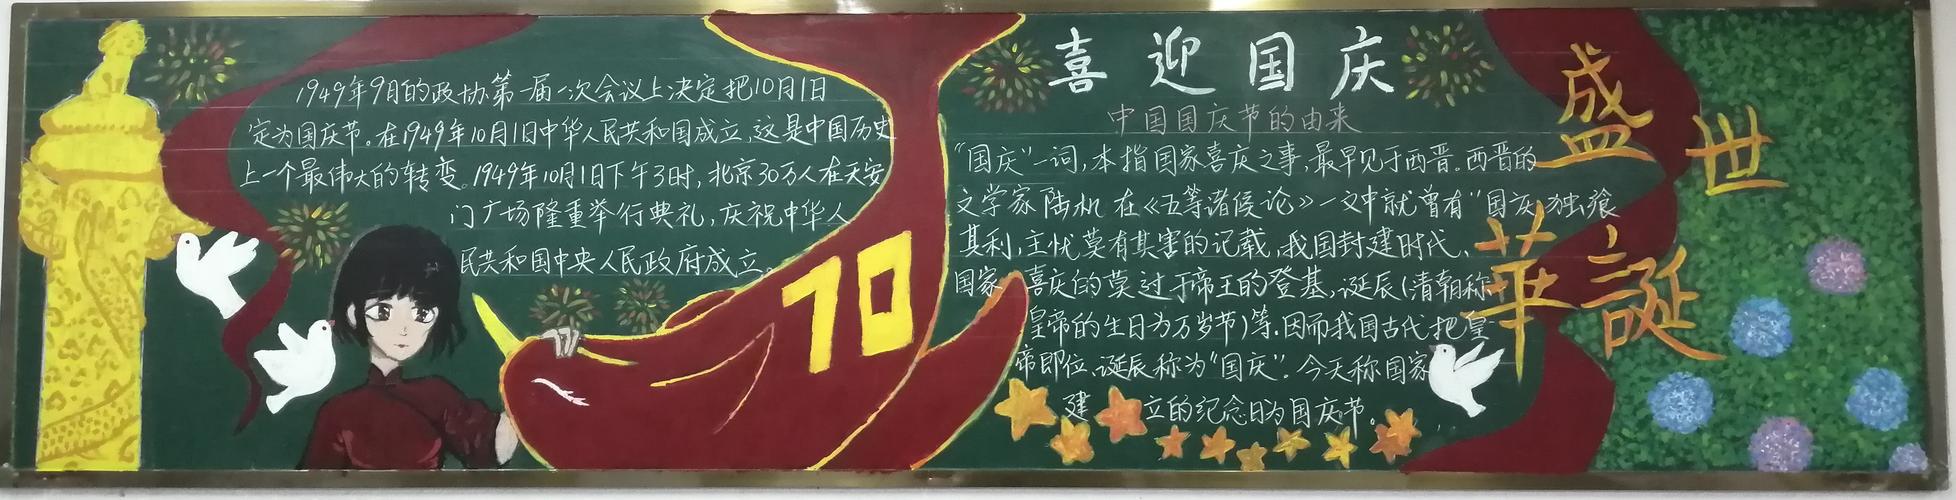 清水六中庆祝建国70周年教室黑板报设计大赛